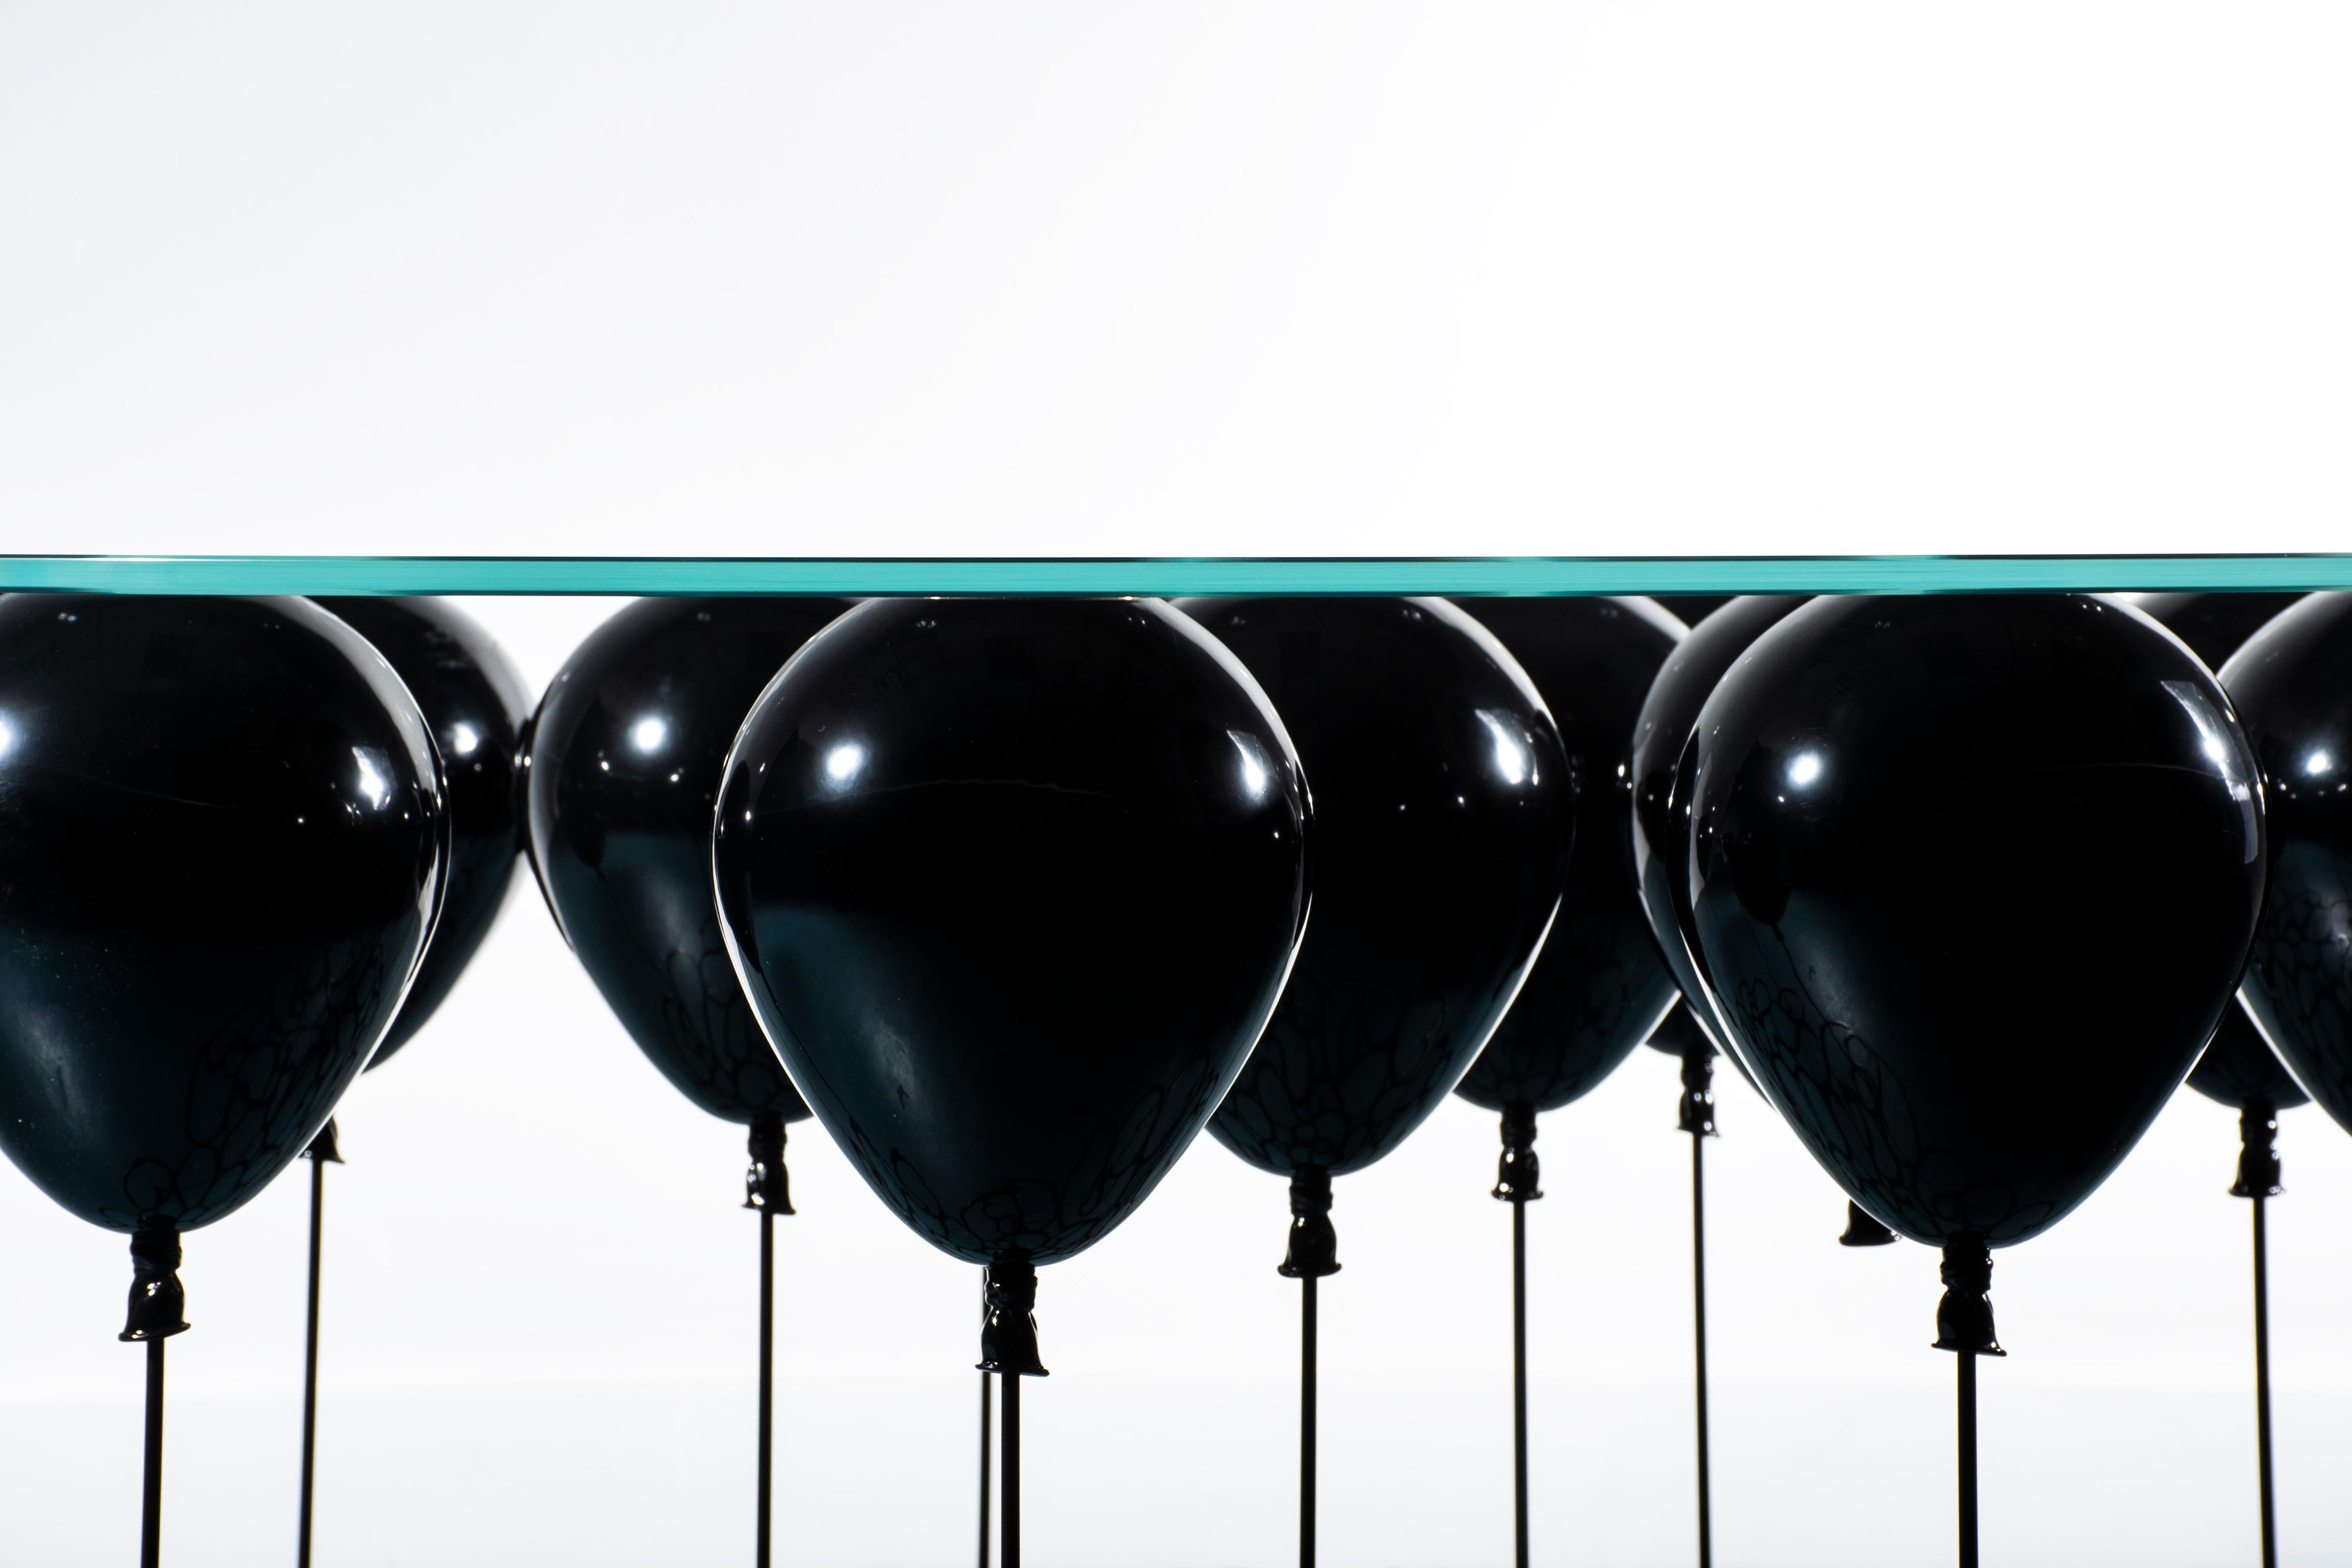 Für diejenigen, die es lieber etwas düsterer mögen, gibt es The Up! Der Balloon Coffee Table des renommierten britischen Designers Christopher Duffy ist makaber mit einer glänzenden schwarzen Oberfläche, die sowohl für die Ballons als auch für die